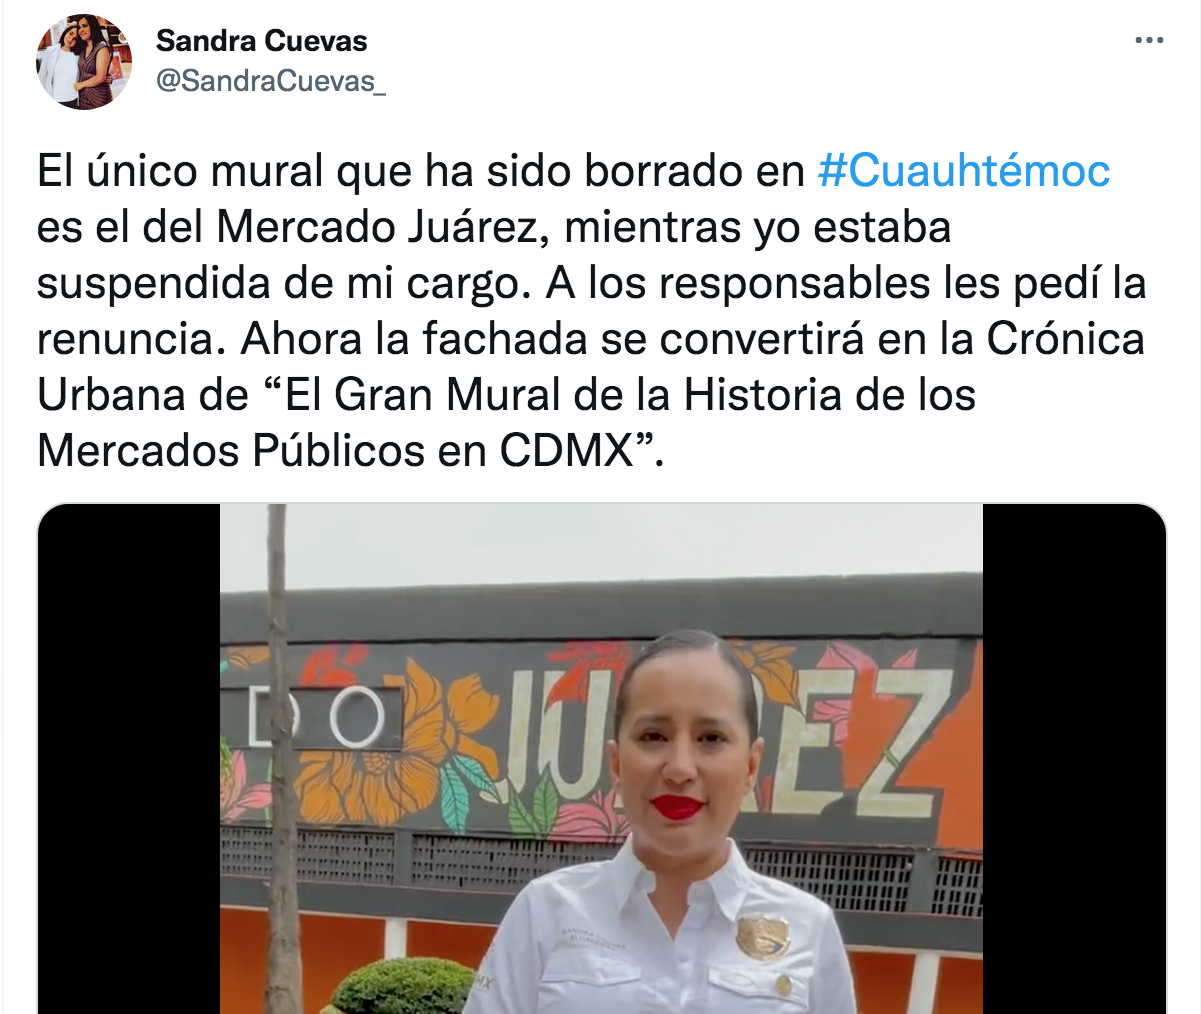 La alcaldesa de la Cuauhtémoc anunció nueva imagen para el Mercado Juárez (Foto: Twitter/@SandraCuevas_)